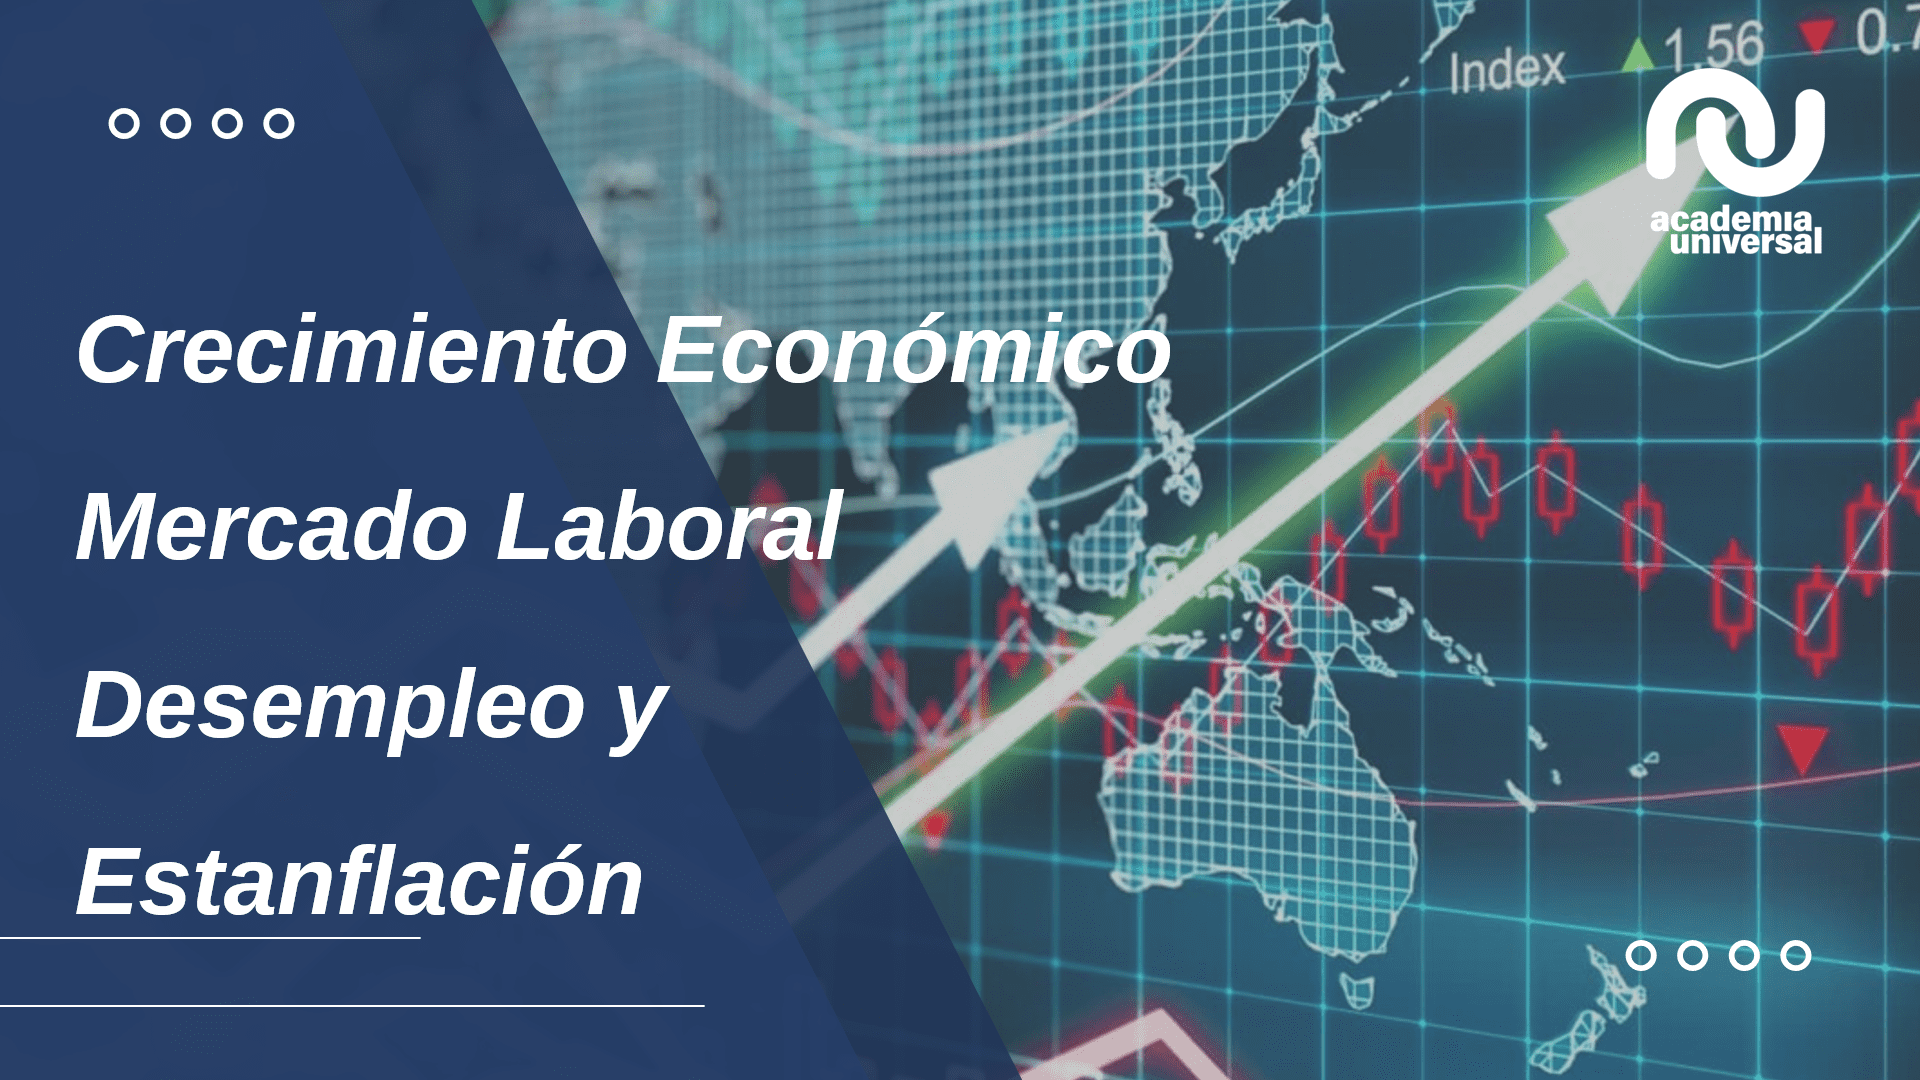 Crecimiento Económico, Mercado Laboral, Desempleo y Estanflación